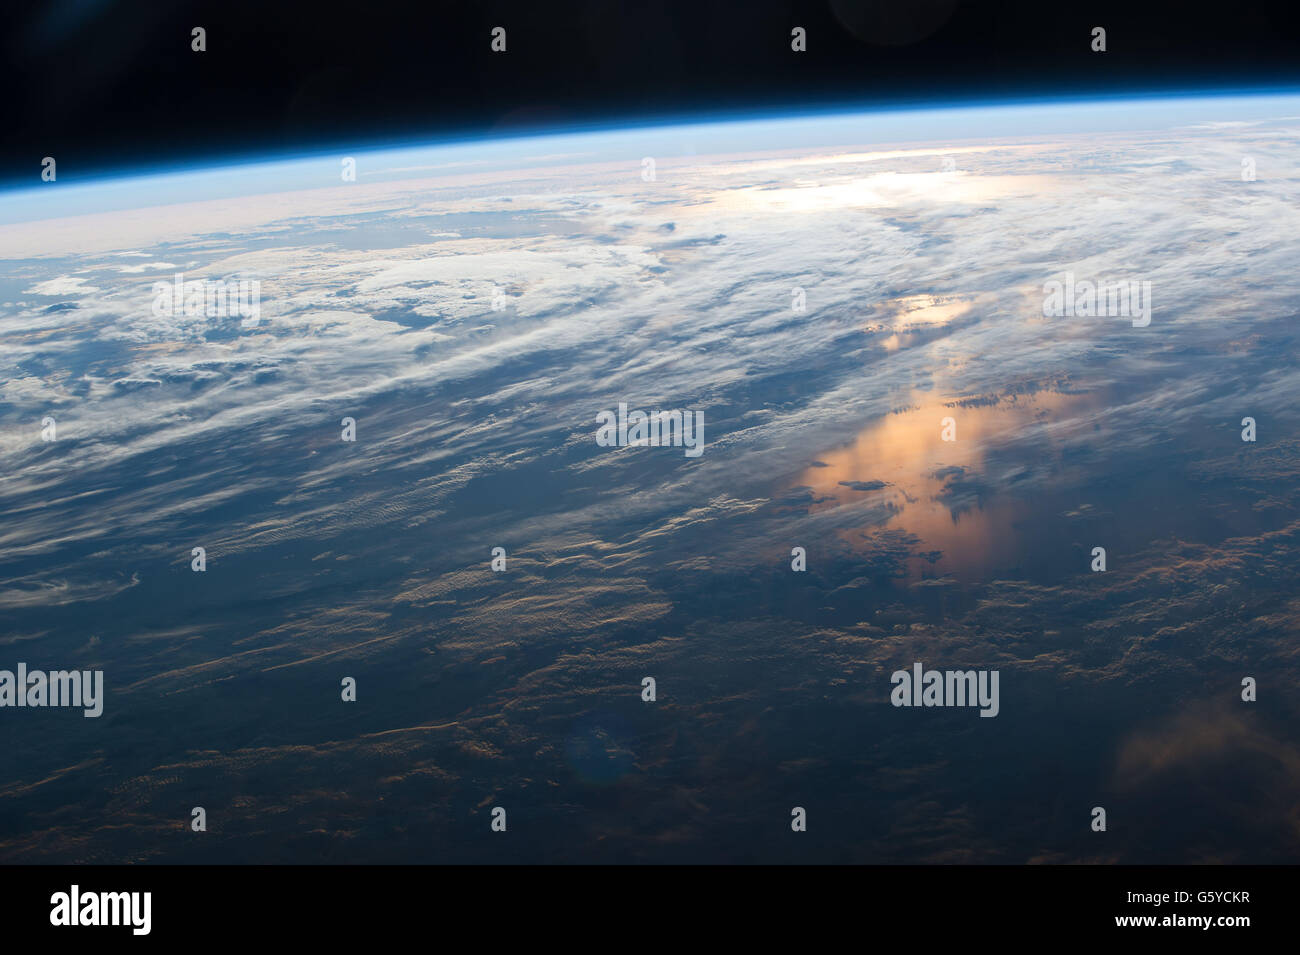 L'observation de la Terre La Station spatiale internationale image capturée par les membres de l'équipage Expédition 48 montrant le soleil qui se reflète sur l'océan et l'atmosphère de la mince couche de protection de la Terre depuis l'espace. Banque D'Images